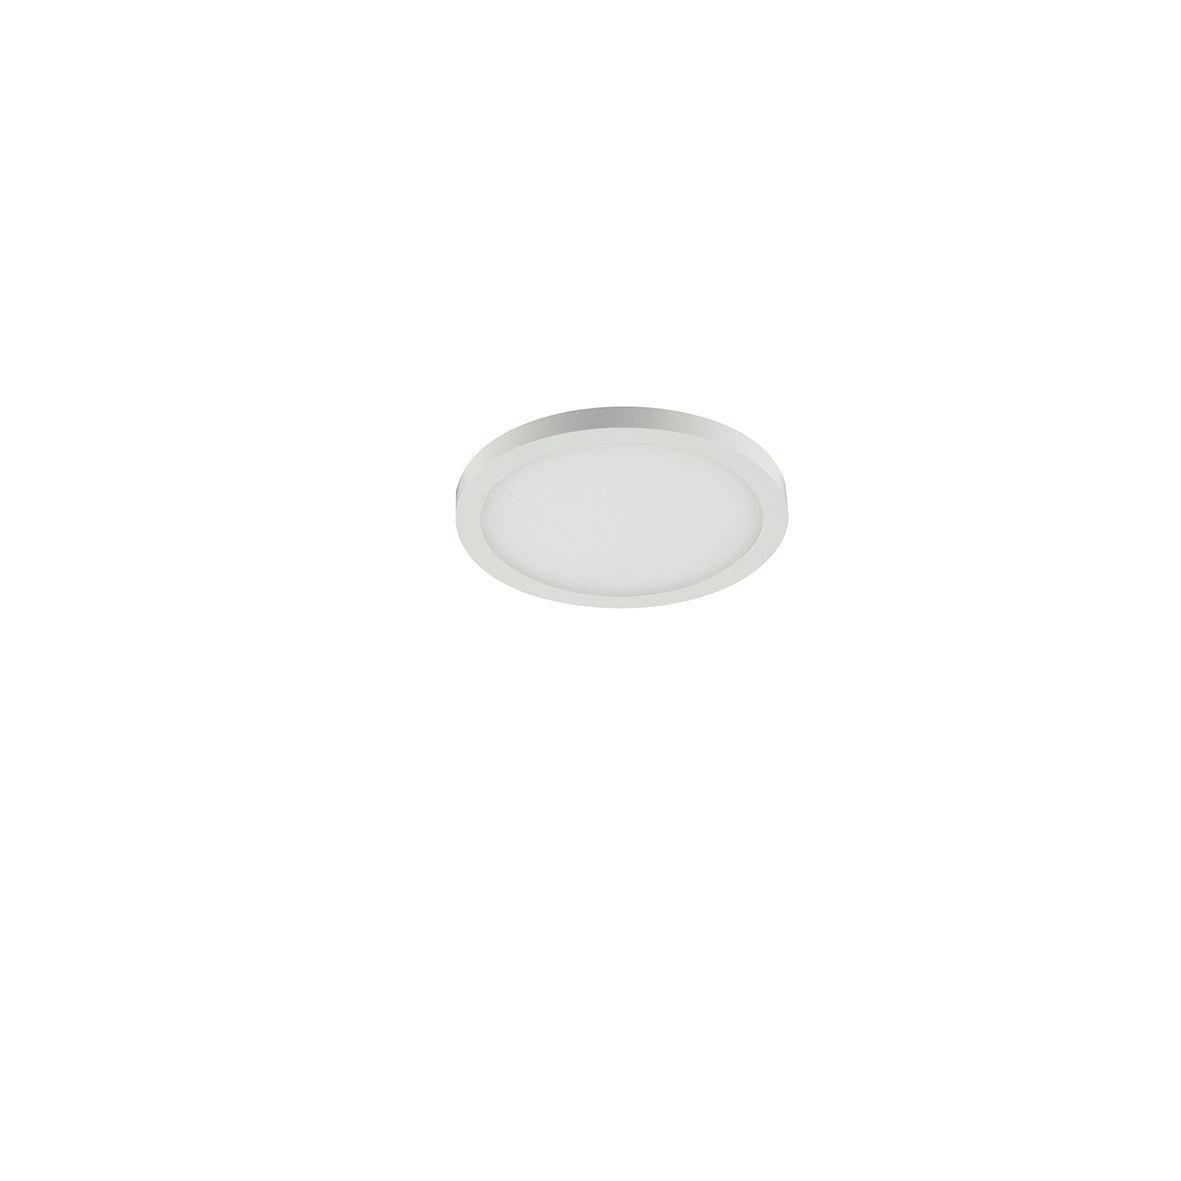 Luminaria empotrable LED PLUS en aluminio blanco mate y borde efecto luz de techo